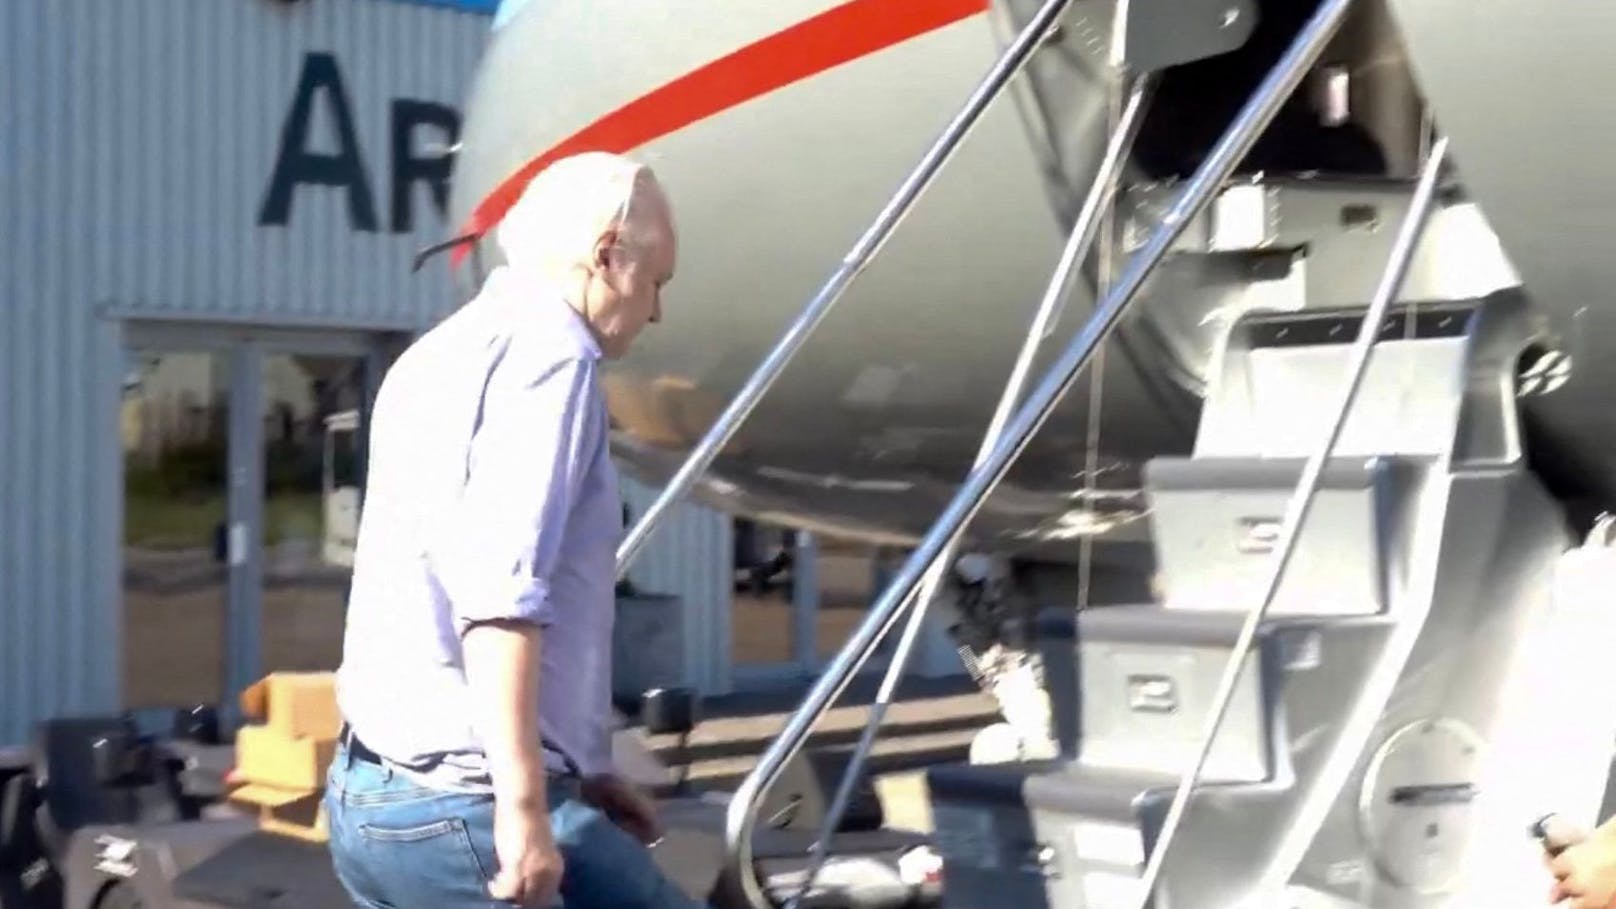 Das Portal veröffentlichte in der Nacht zum Dienstag ein Video, das zeigen soll, wie der 52-Jährige am Montag am Londoner Flughafen Stansted ein Flugzeug besteigt.